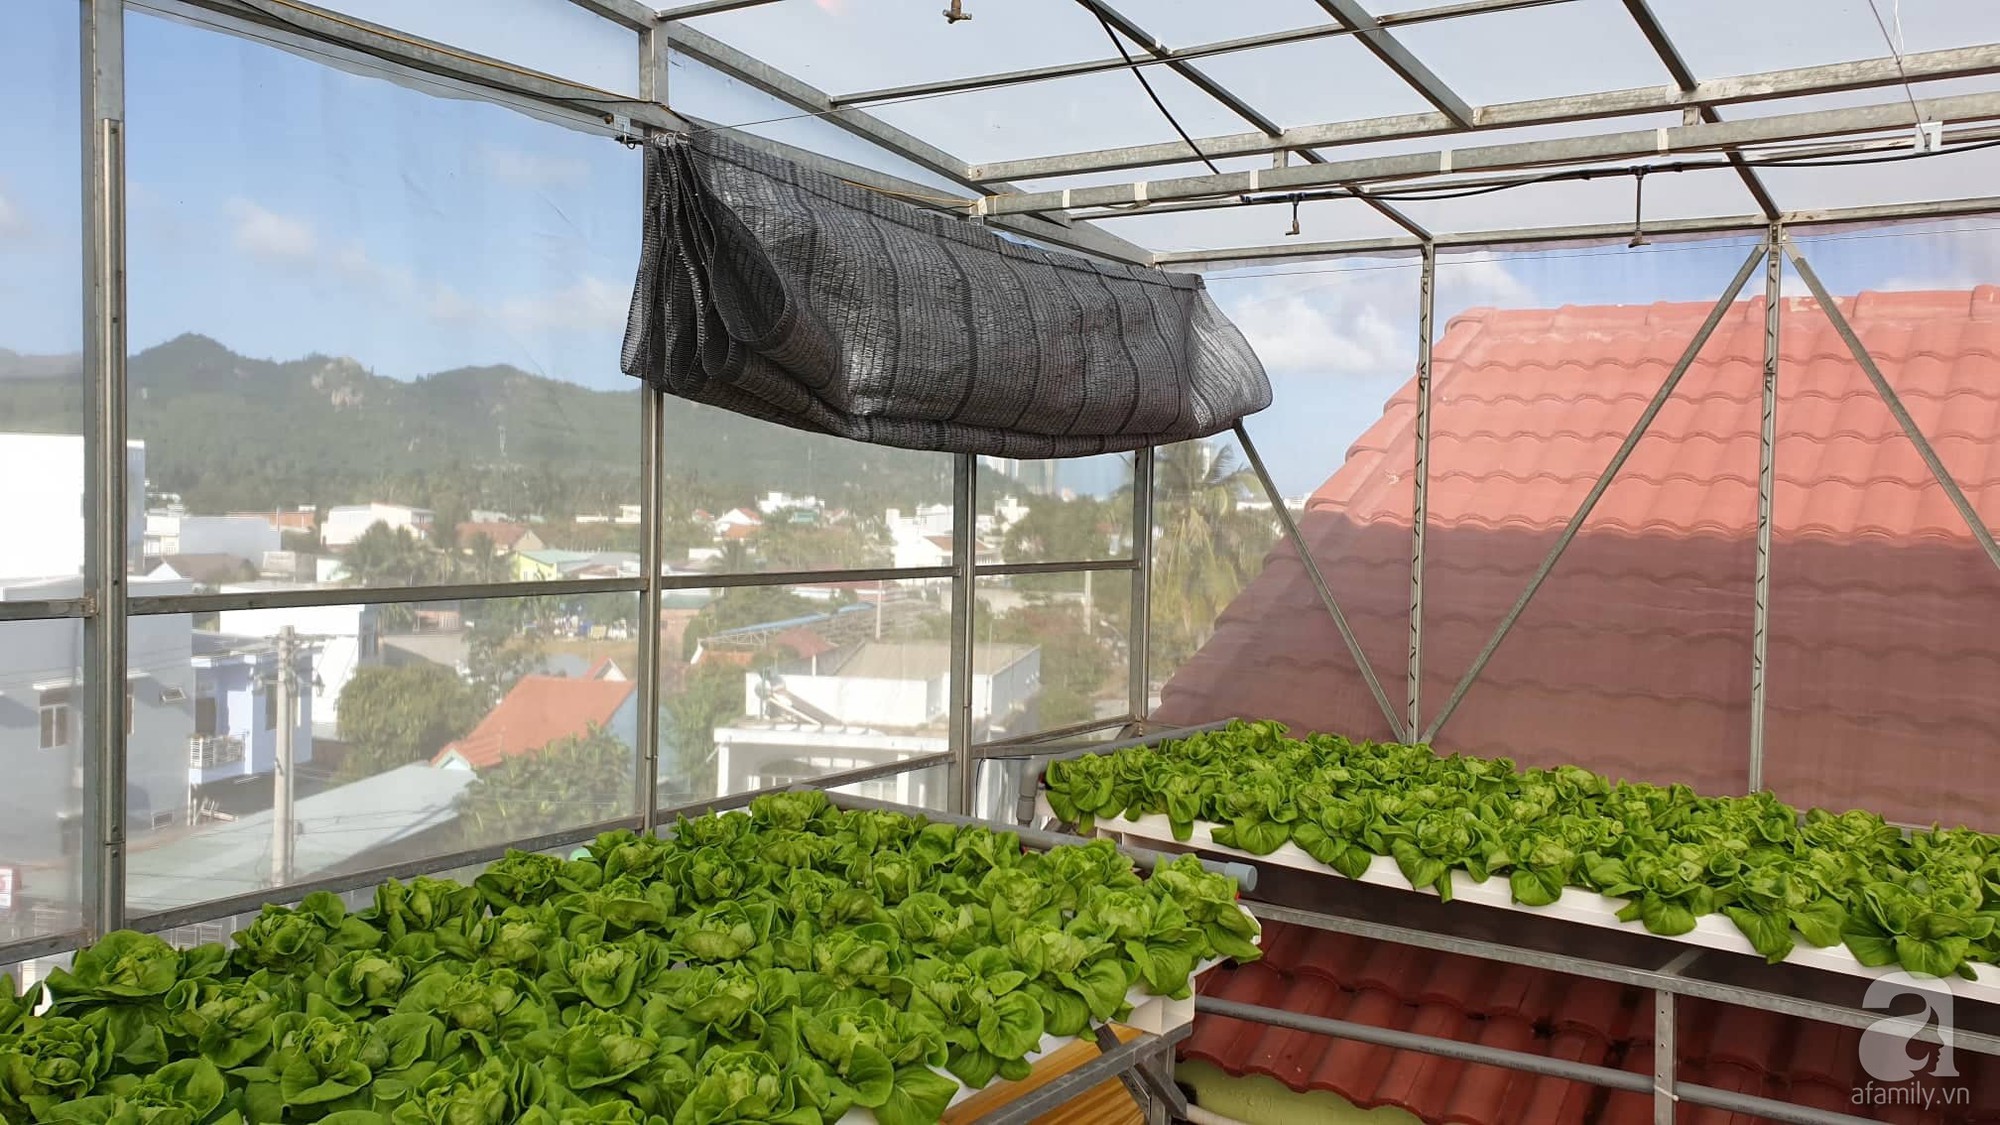 Mô hình trồng rau trên sân thượng hiệu quả nhấtthiết kế cùng Quang Anh